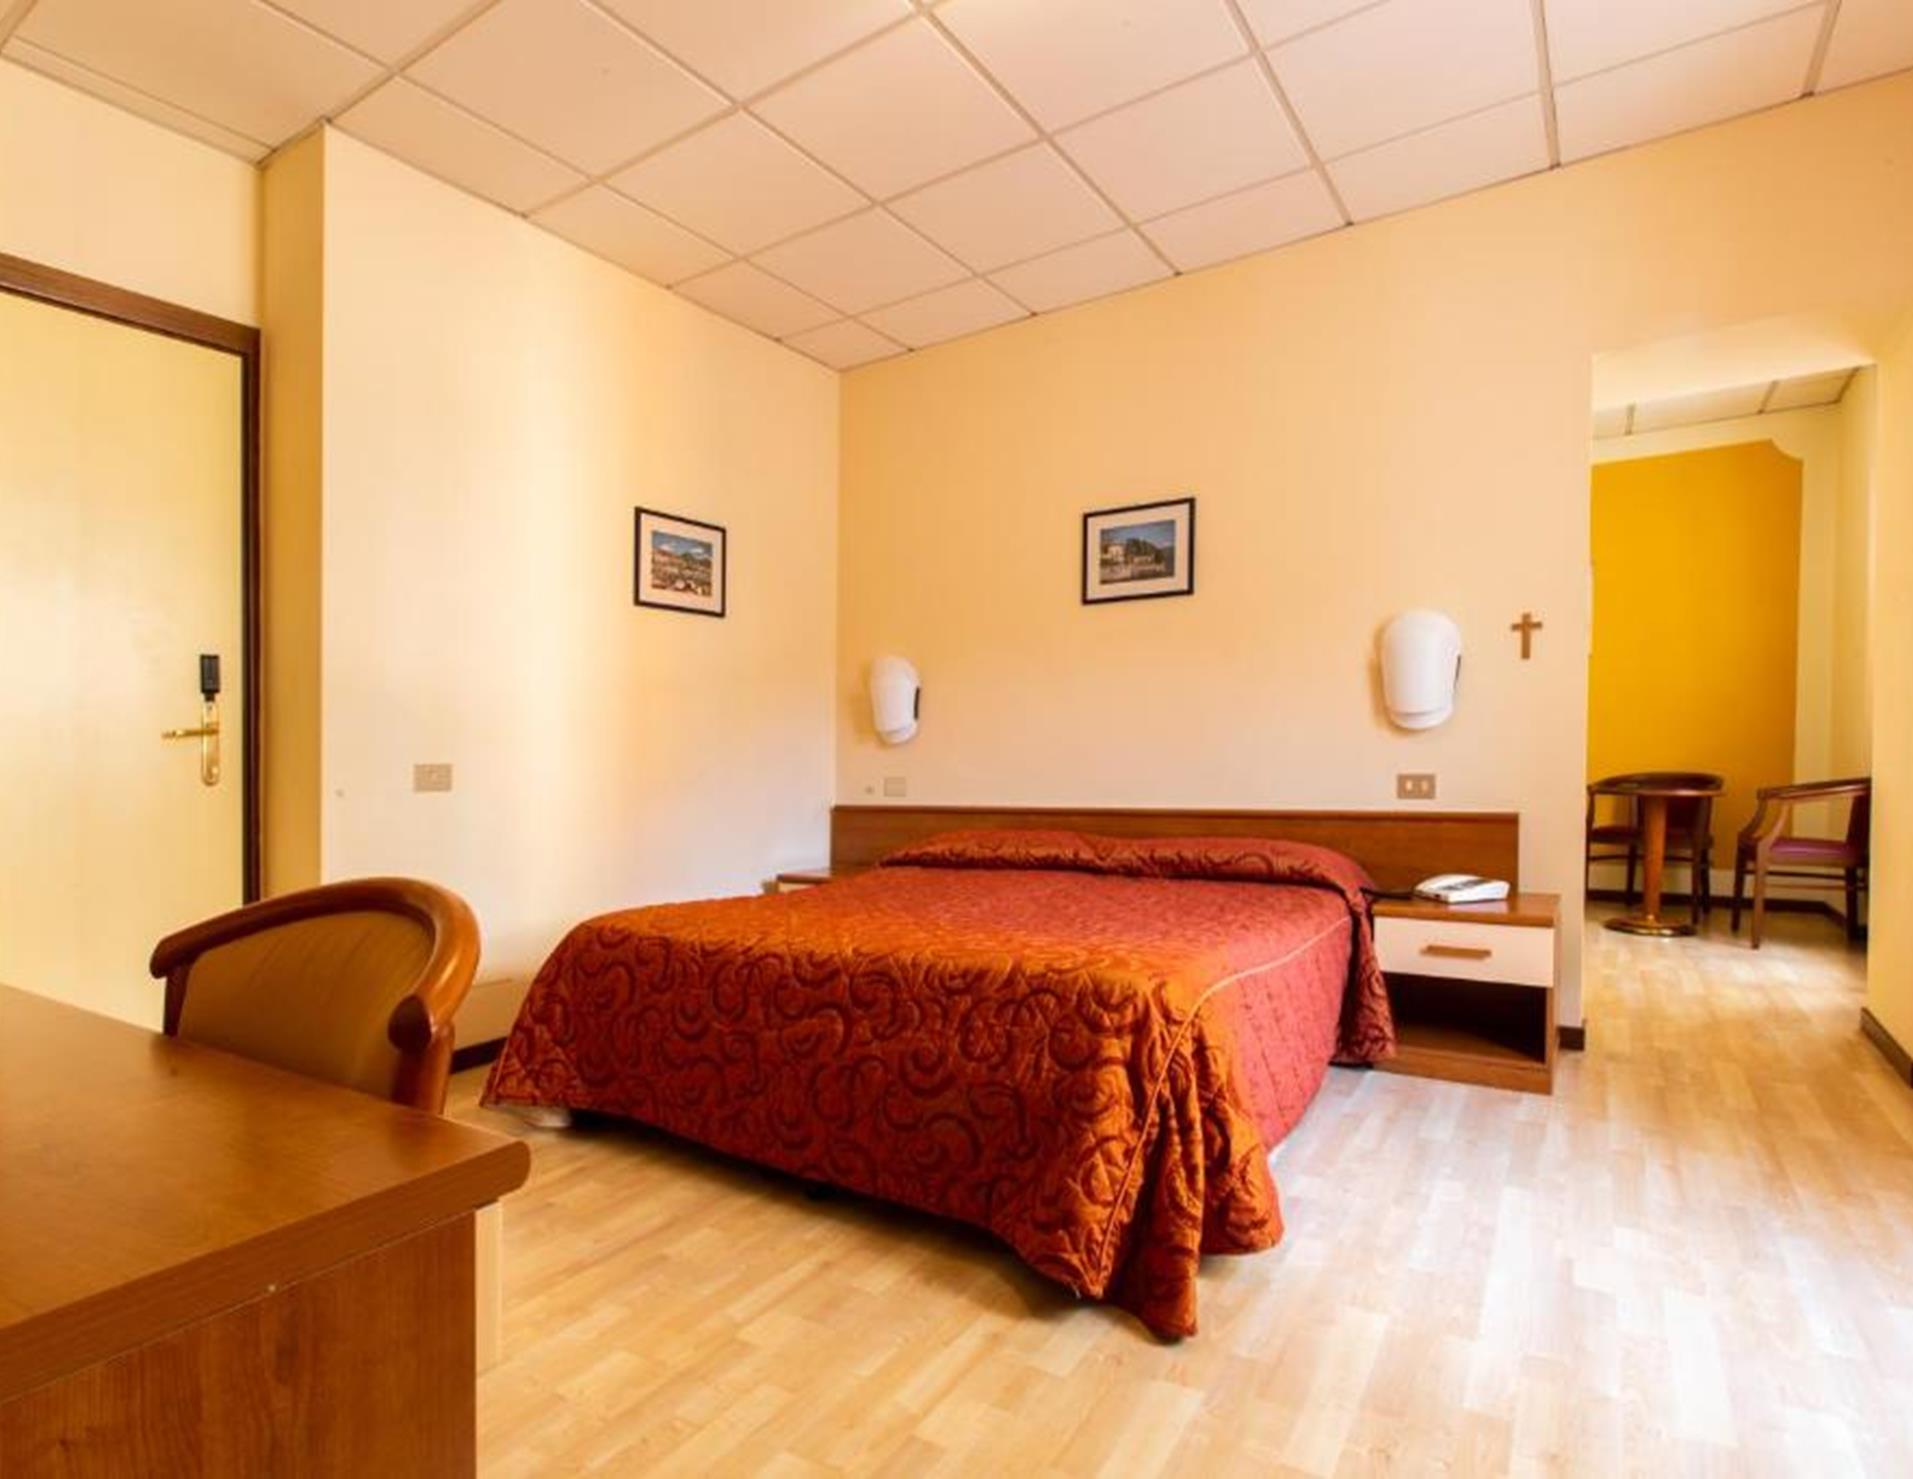 Hotel Il Chiostro - Room 2